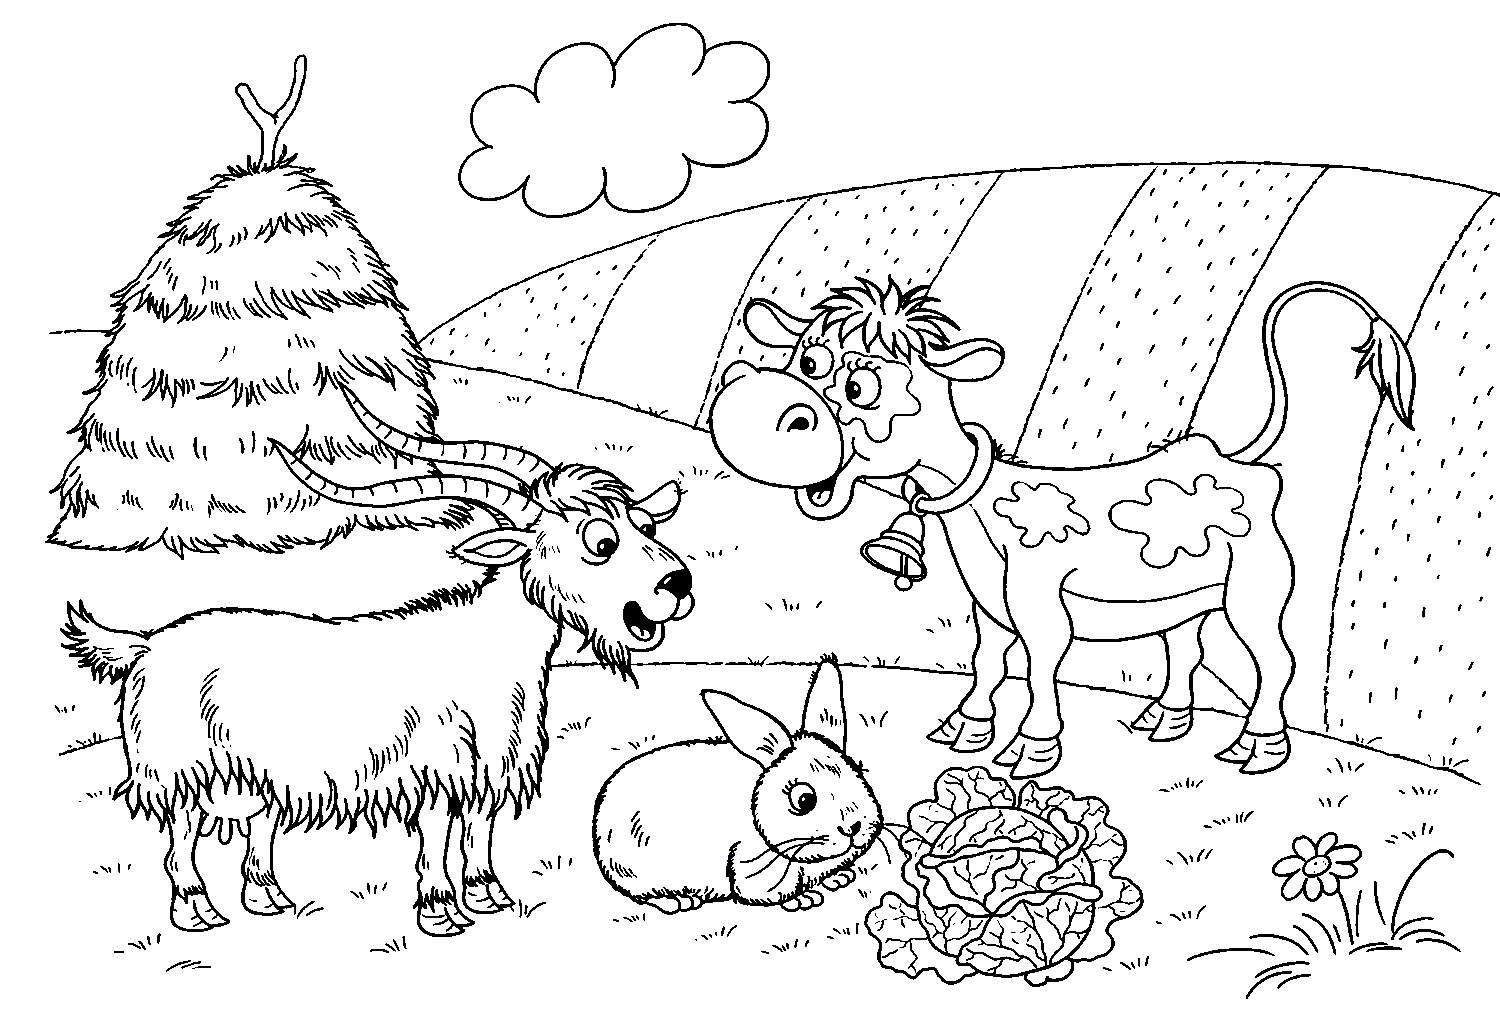 Забавный теленок с милыми сельскохозяйственными животными из теленка